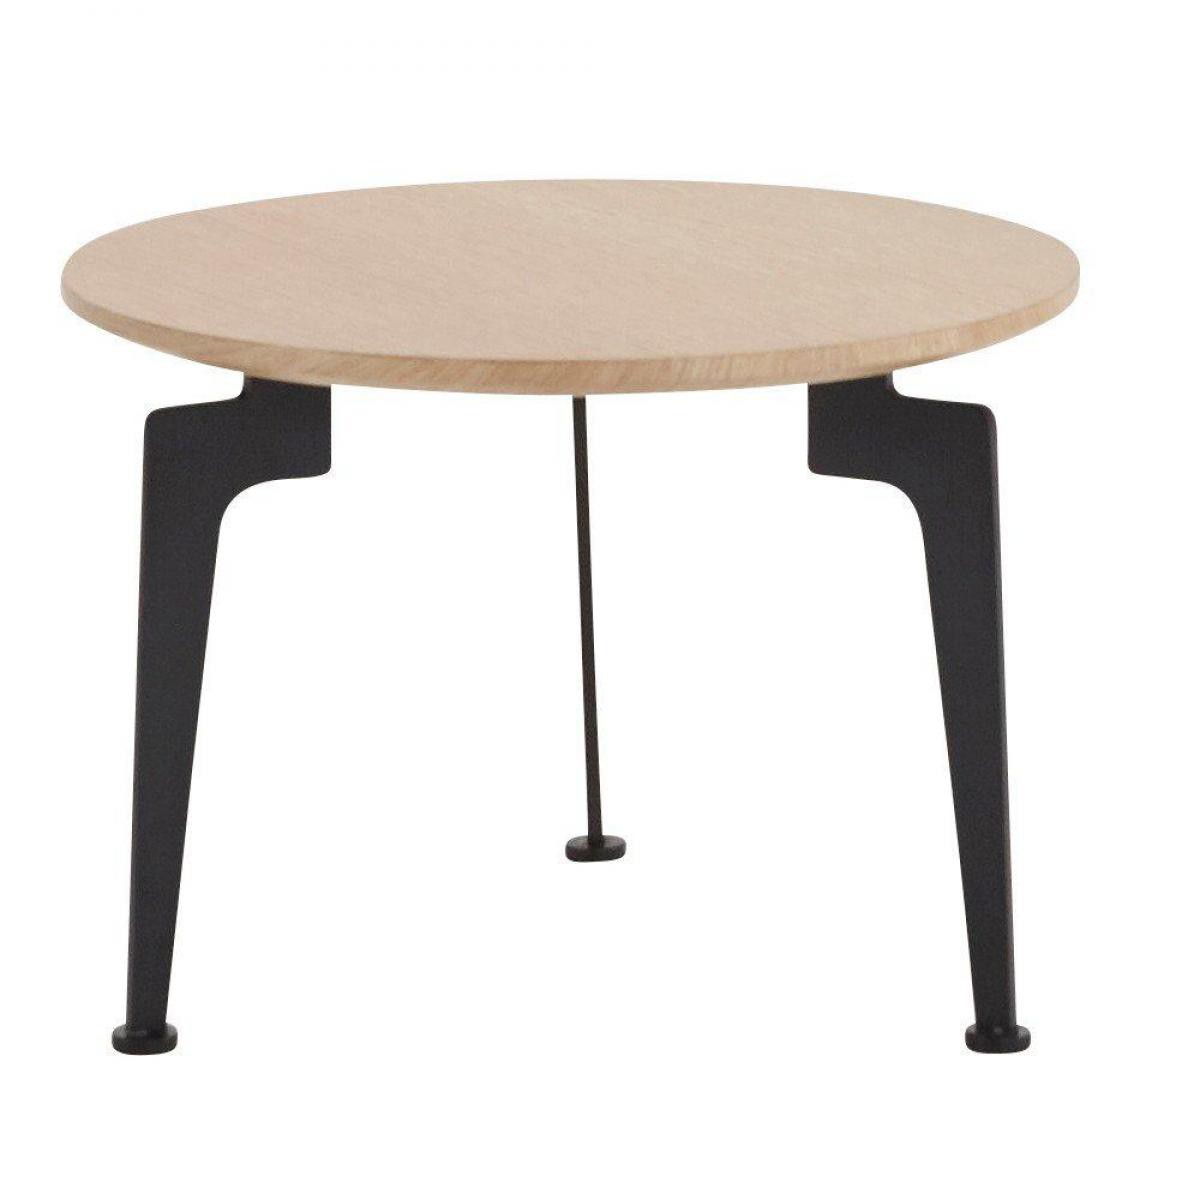 Inside 75 - INNOVATION LIVING Table basse design scandinave LASER taille M chêne - Tables à manger